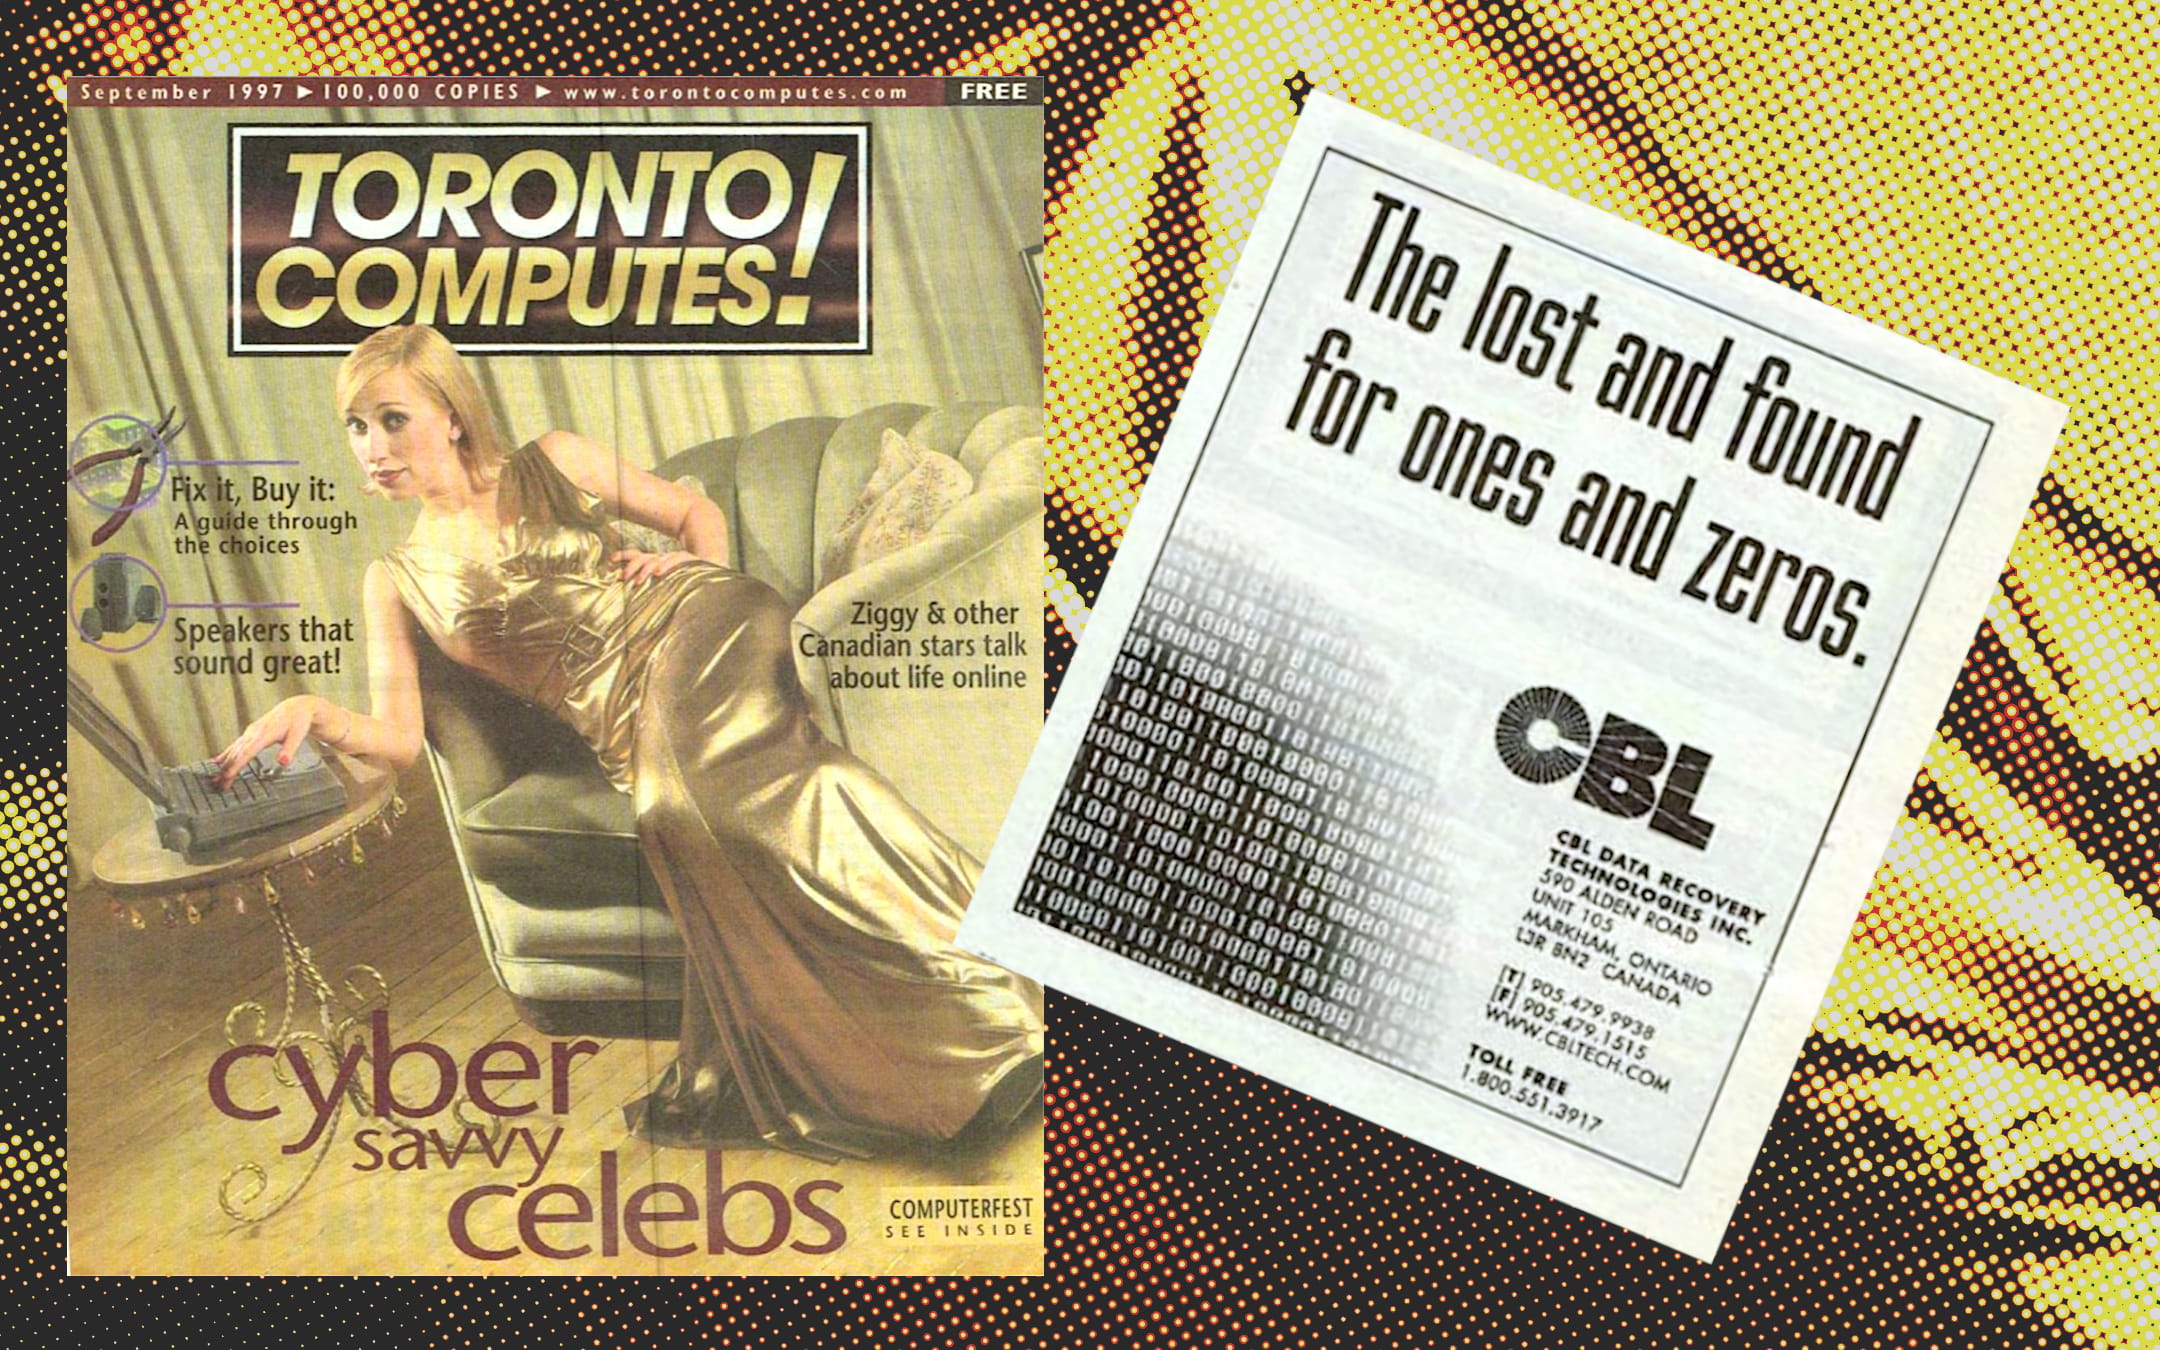 CBL Pictures: Toronto Computes!